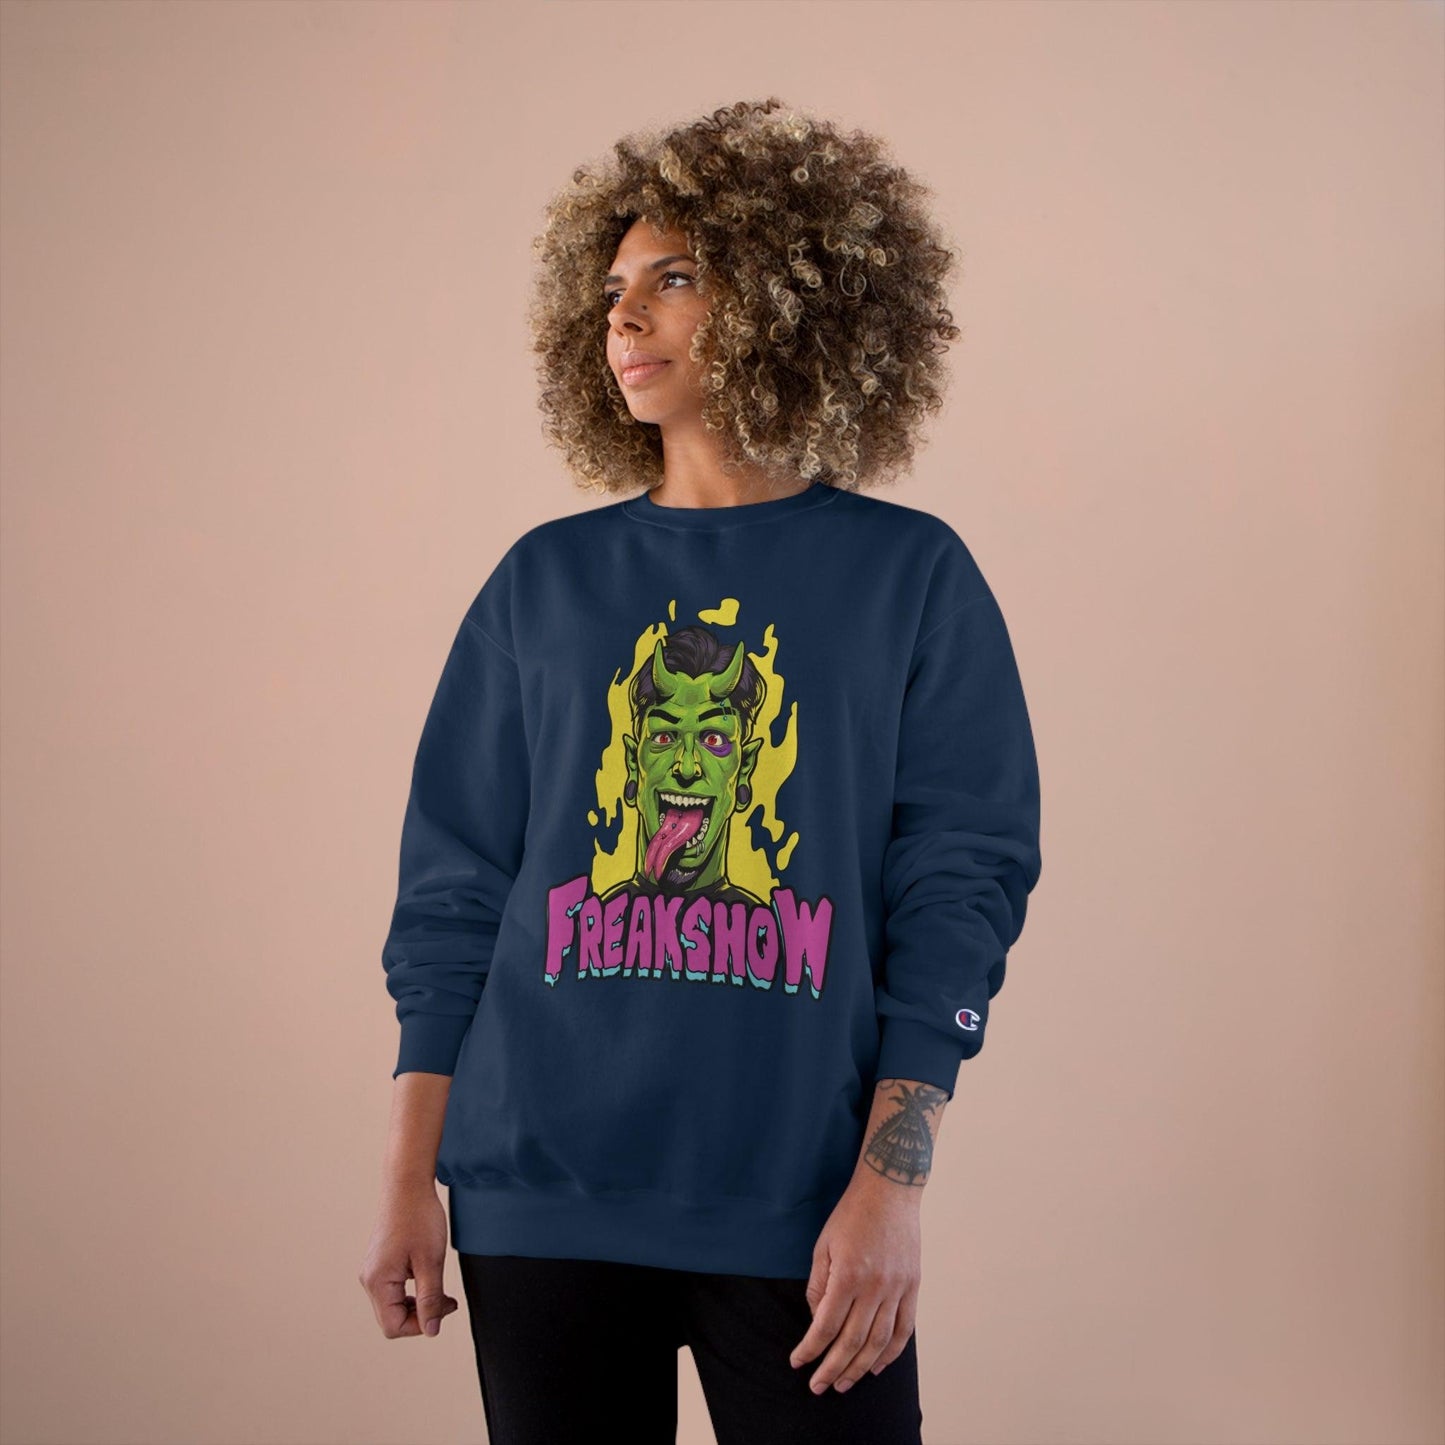 Freakshow - Champion Sweatshirt - Shaneinvasion